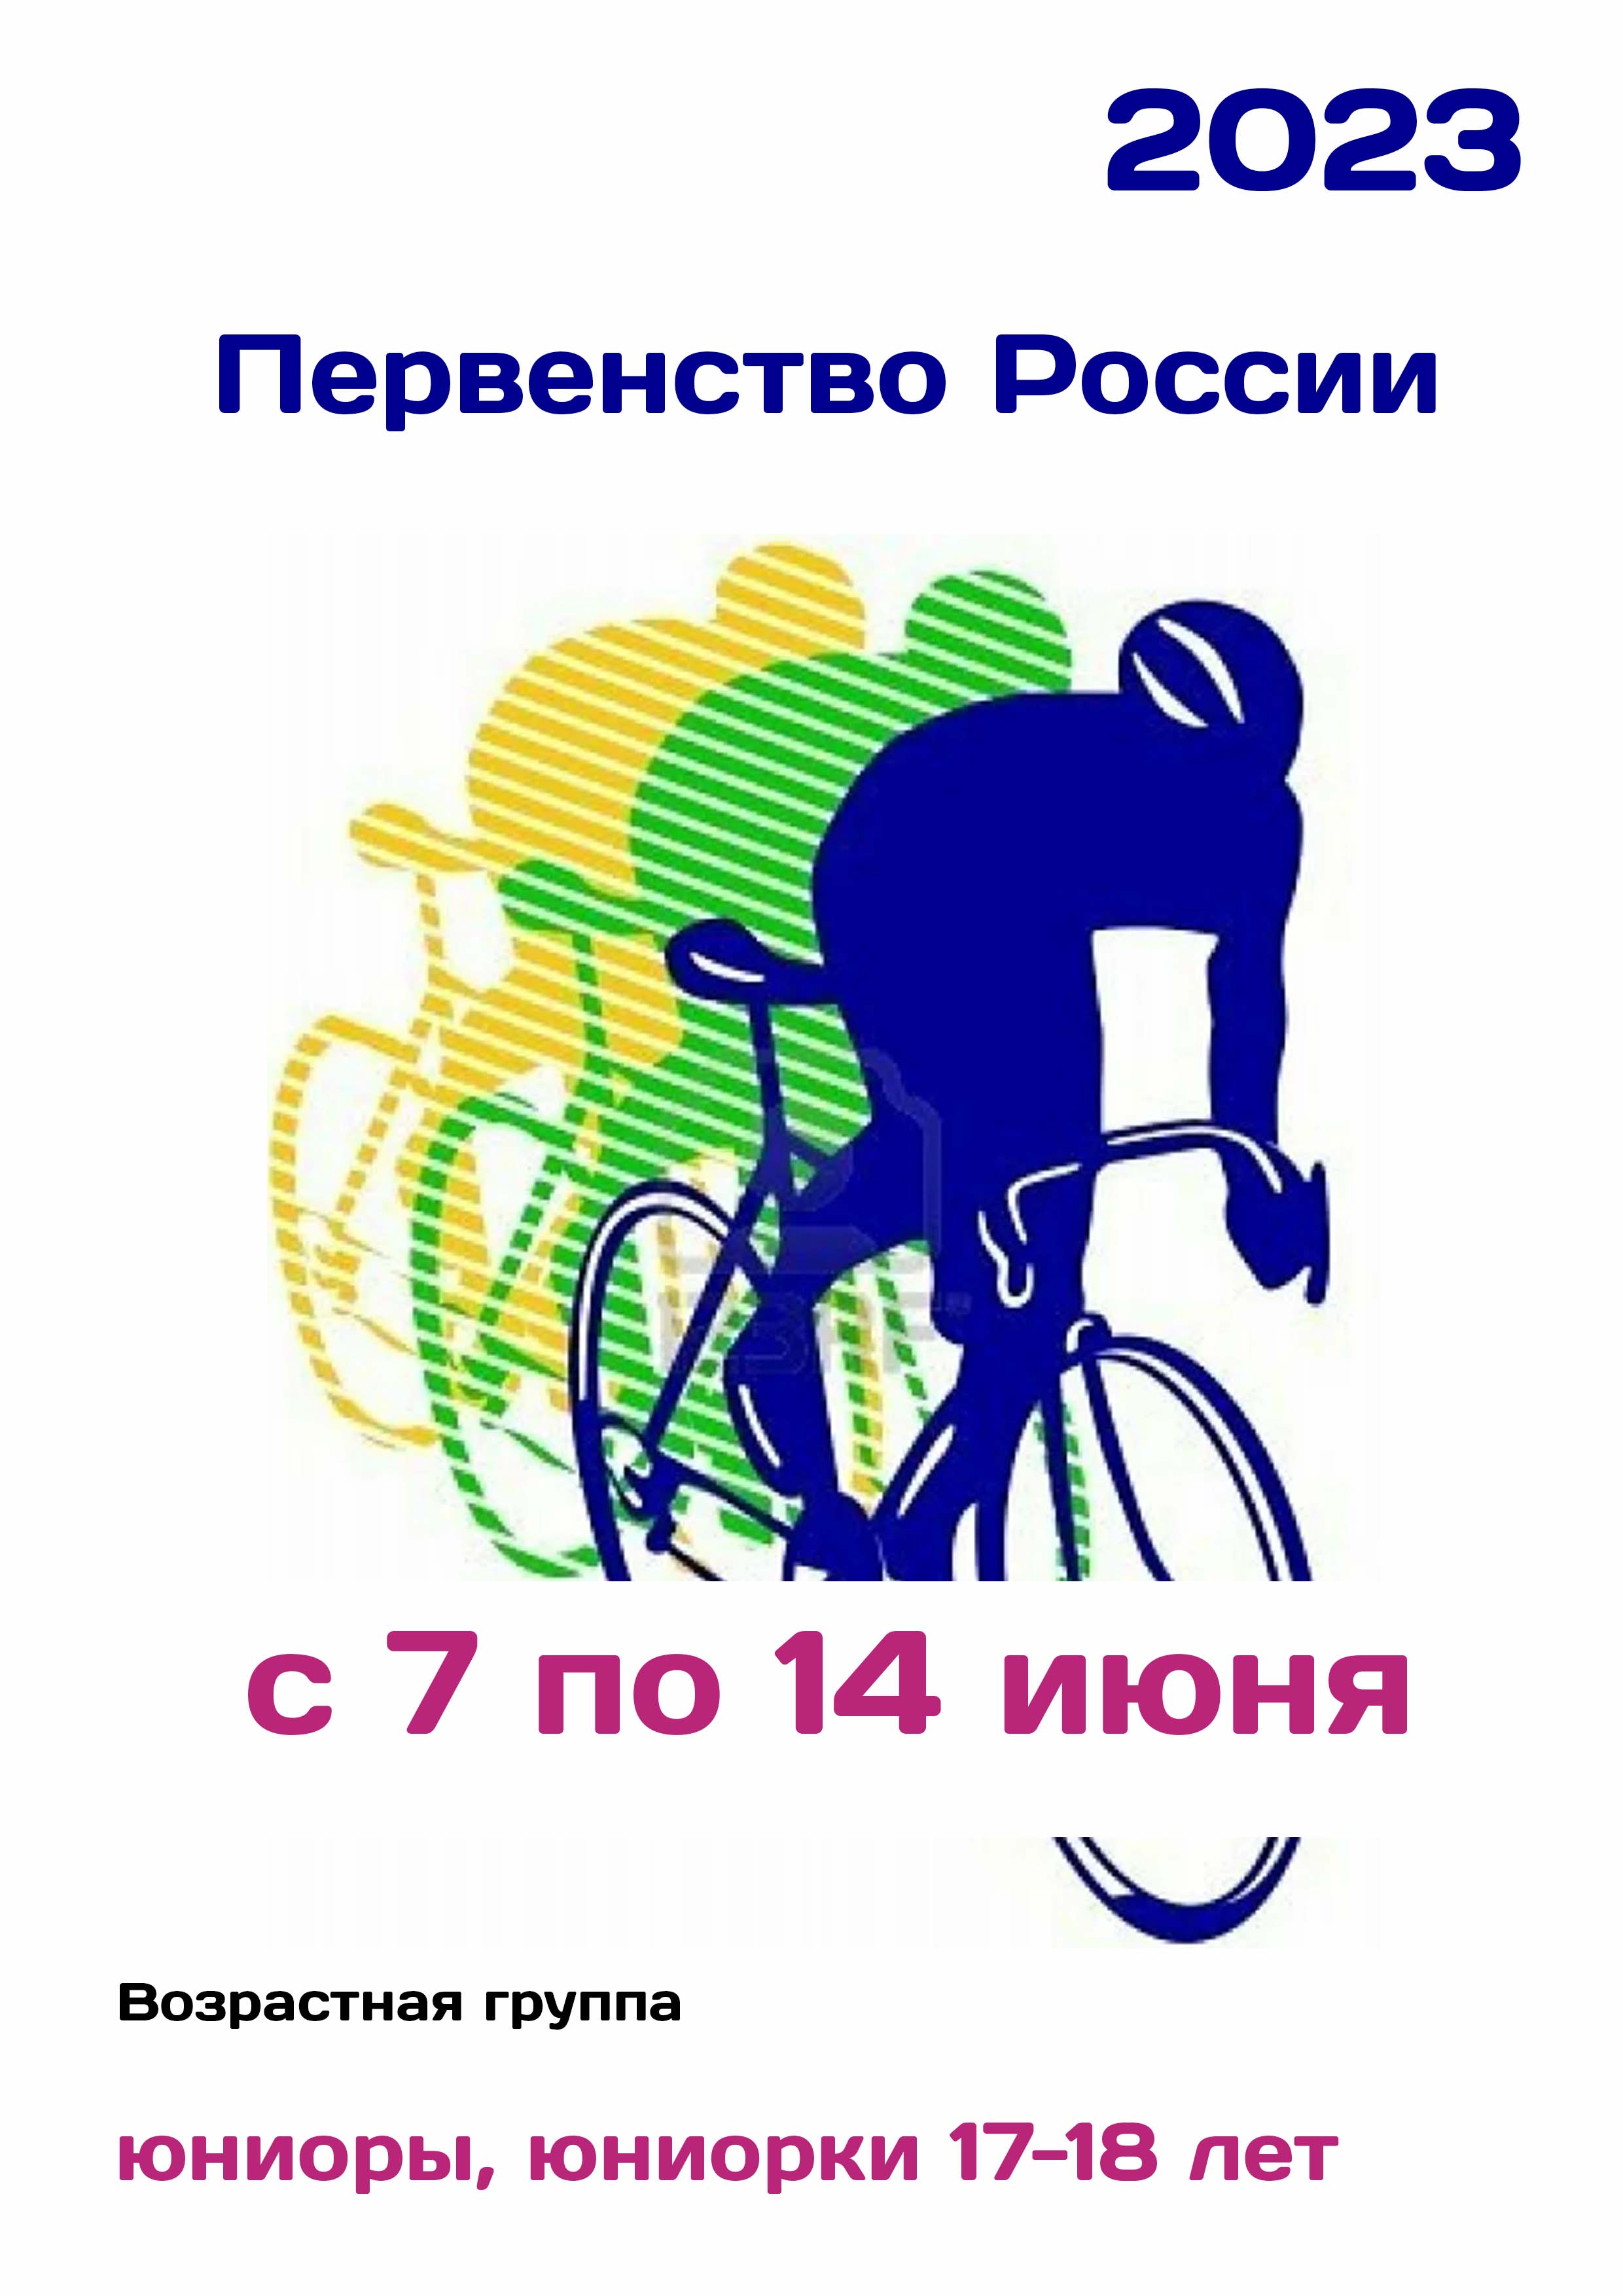 Первенство России по велоспорту 7  መገለጫዎ ጋር ይገናኛሉ ግምገማ
 2023  ዓመት
 